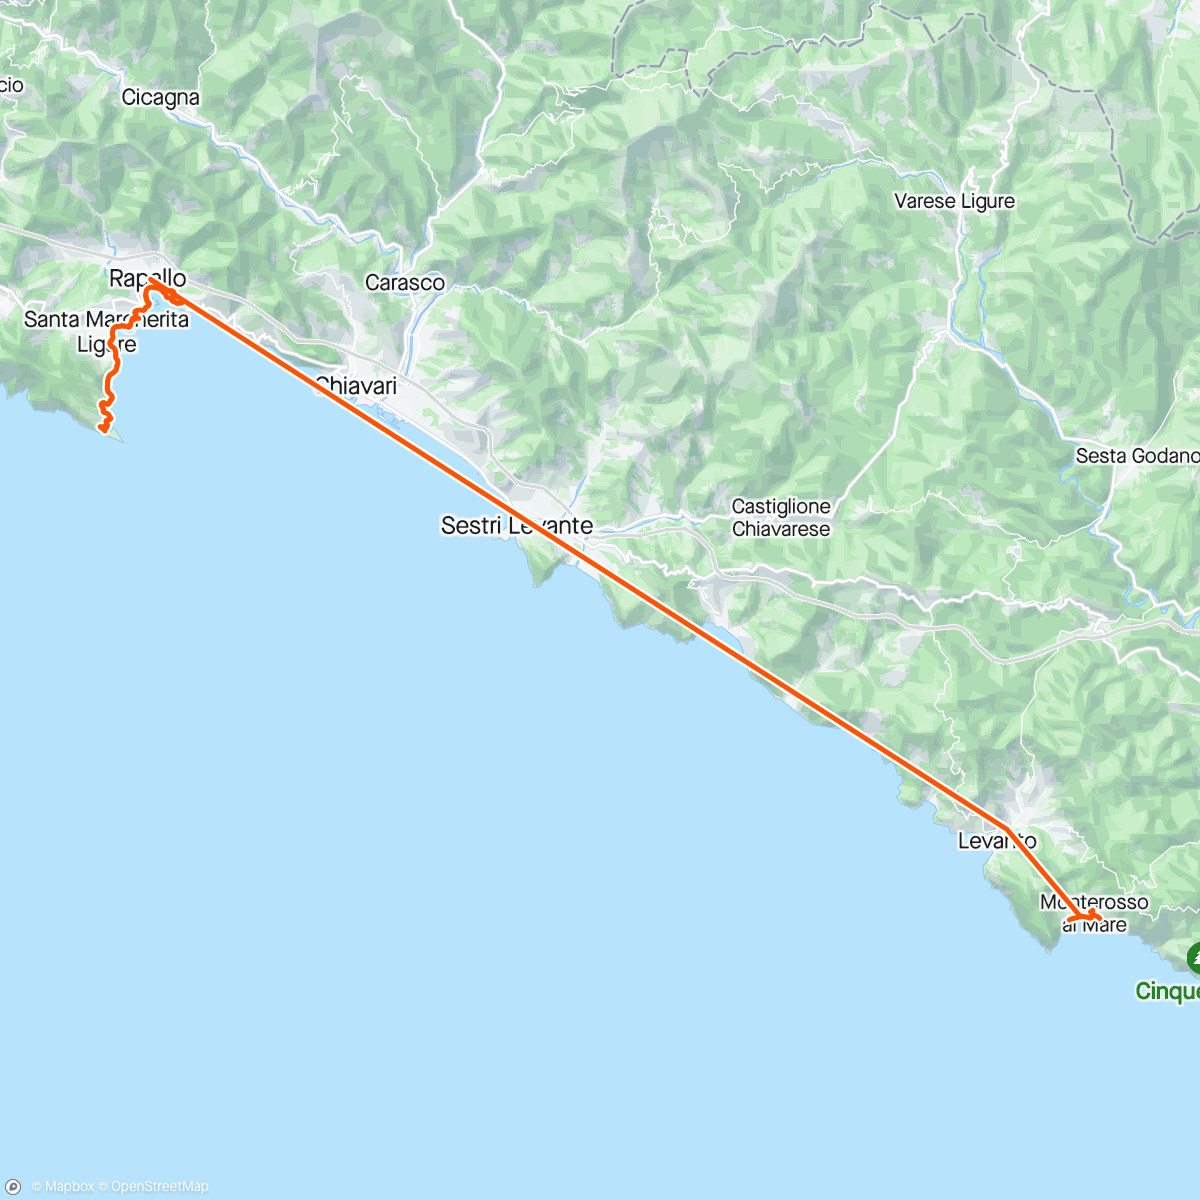 「Portafino 41k steps」活動的地圖